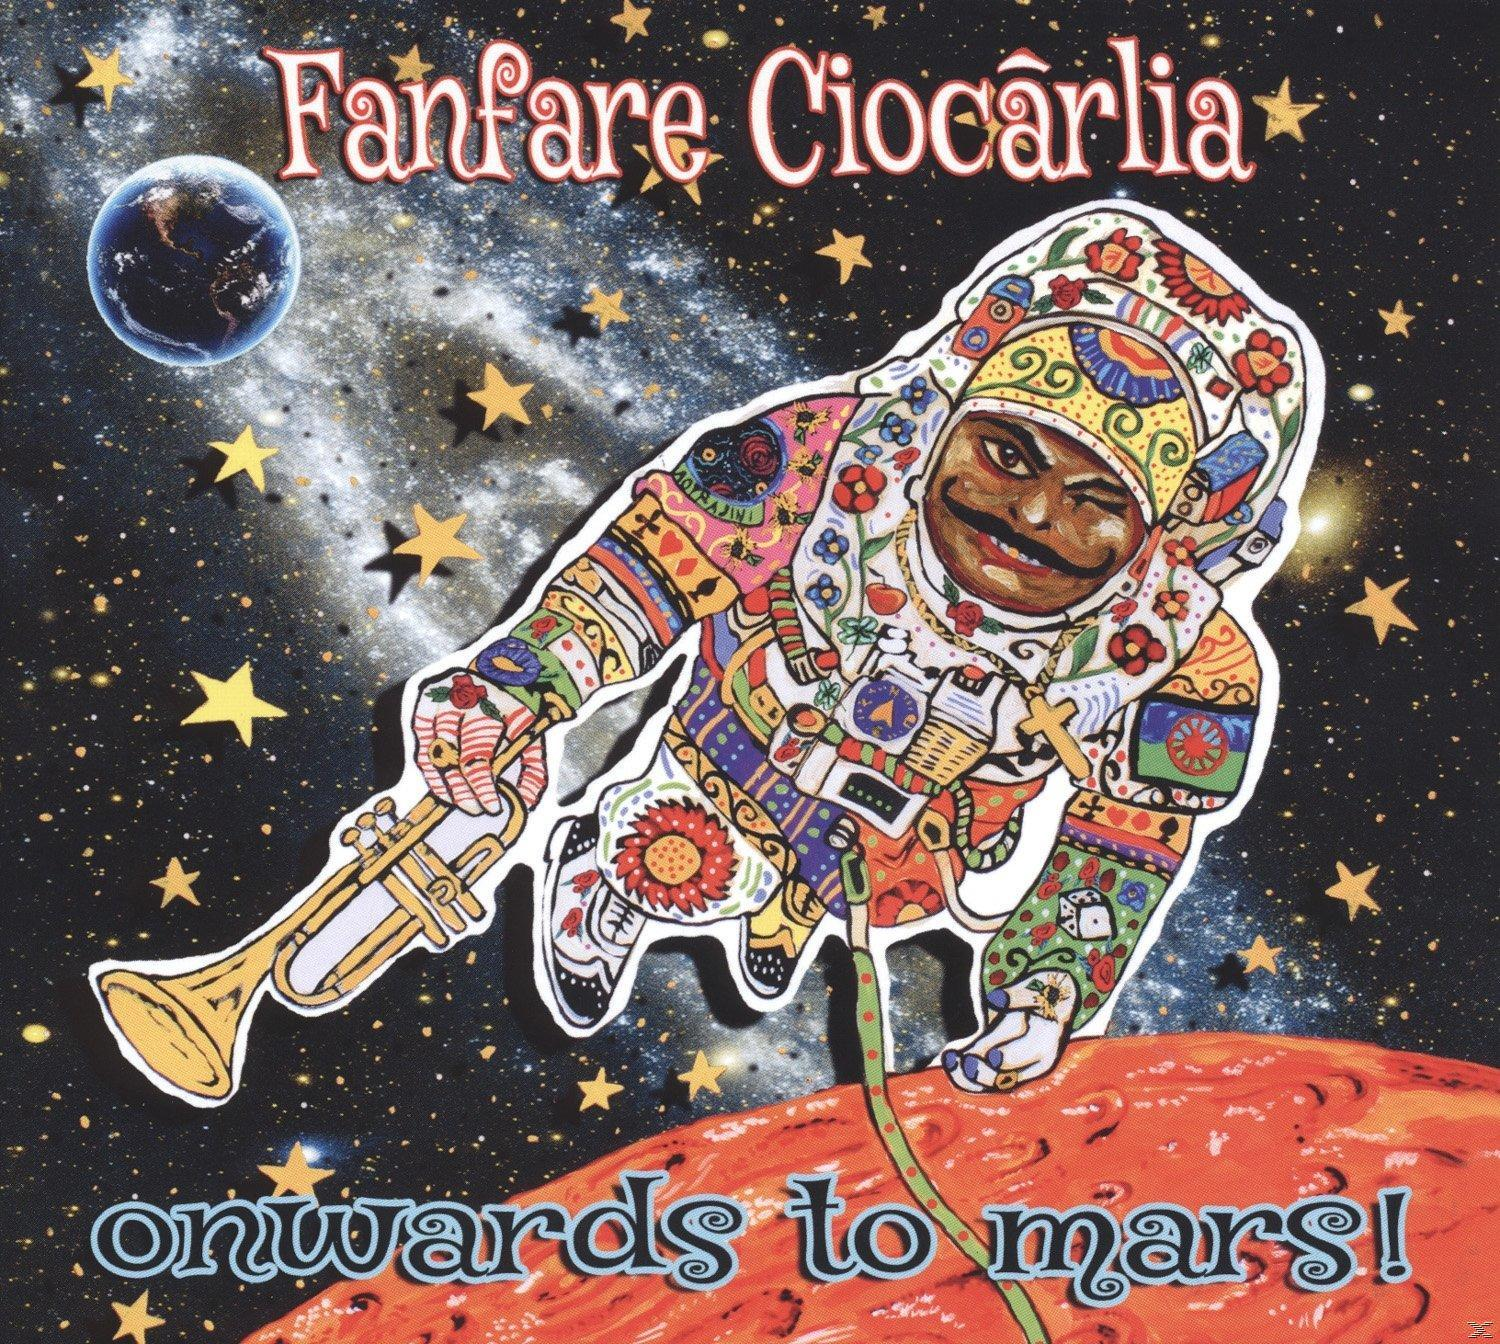 Fanfare Ciocarlia - Onwards (Vinyl) Mars - To